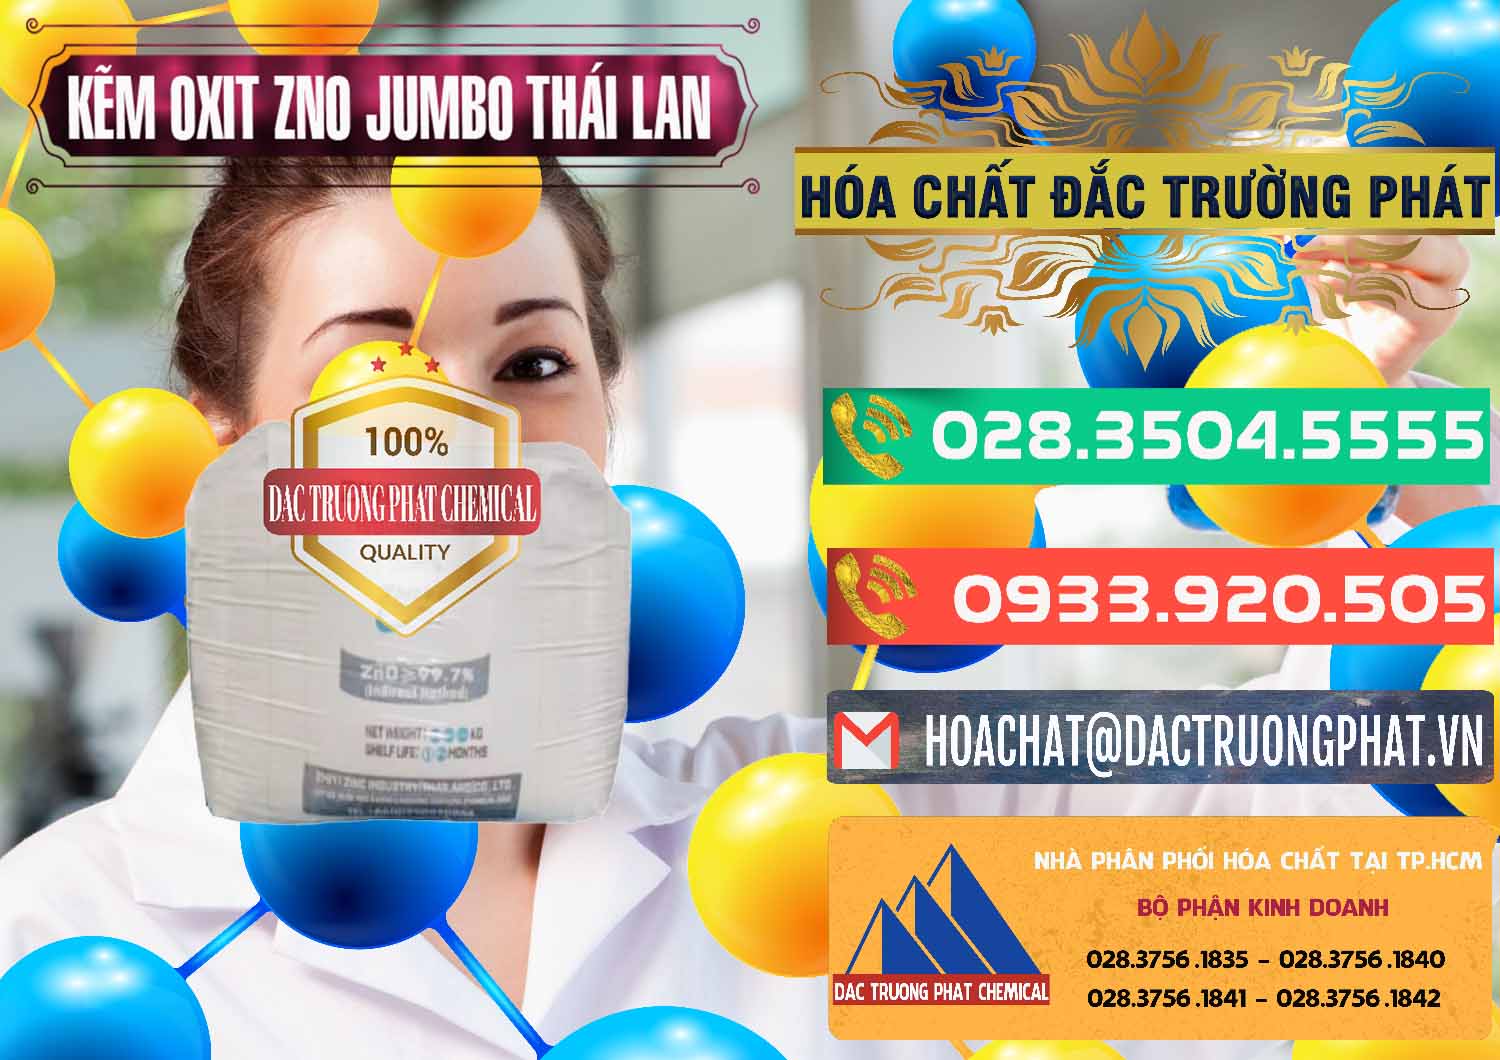 Nơi cung ứng và bán Zinc Oxide - Bột Kẽm Oxit ZNO Jumbo Bành Thái Lan Thailand - 0370 - Kinh doanh và phân phối hóa chất tại TP.HCM - congtyhoachat.com.vn